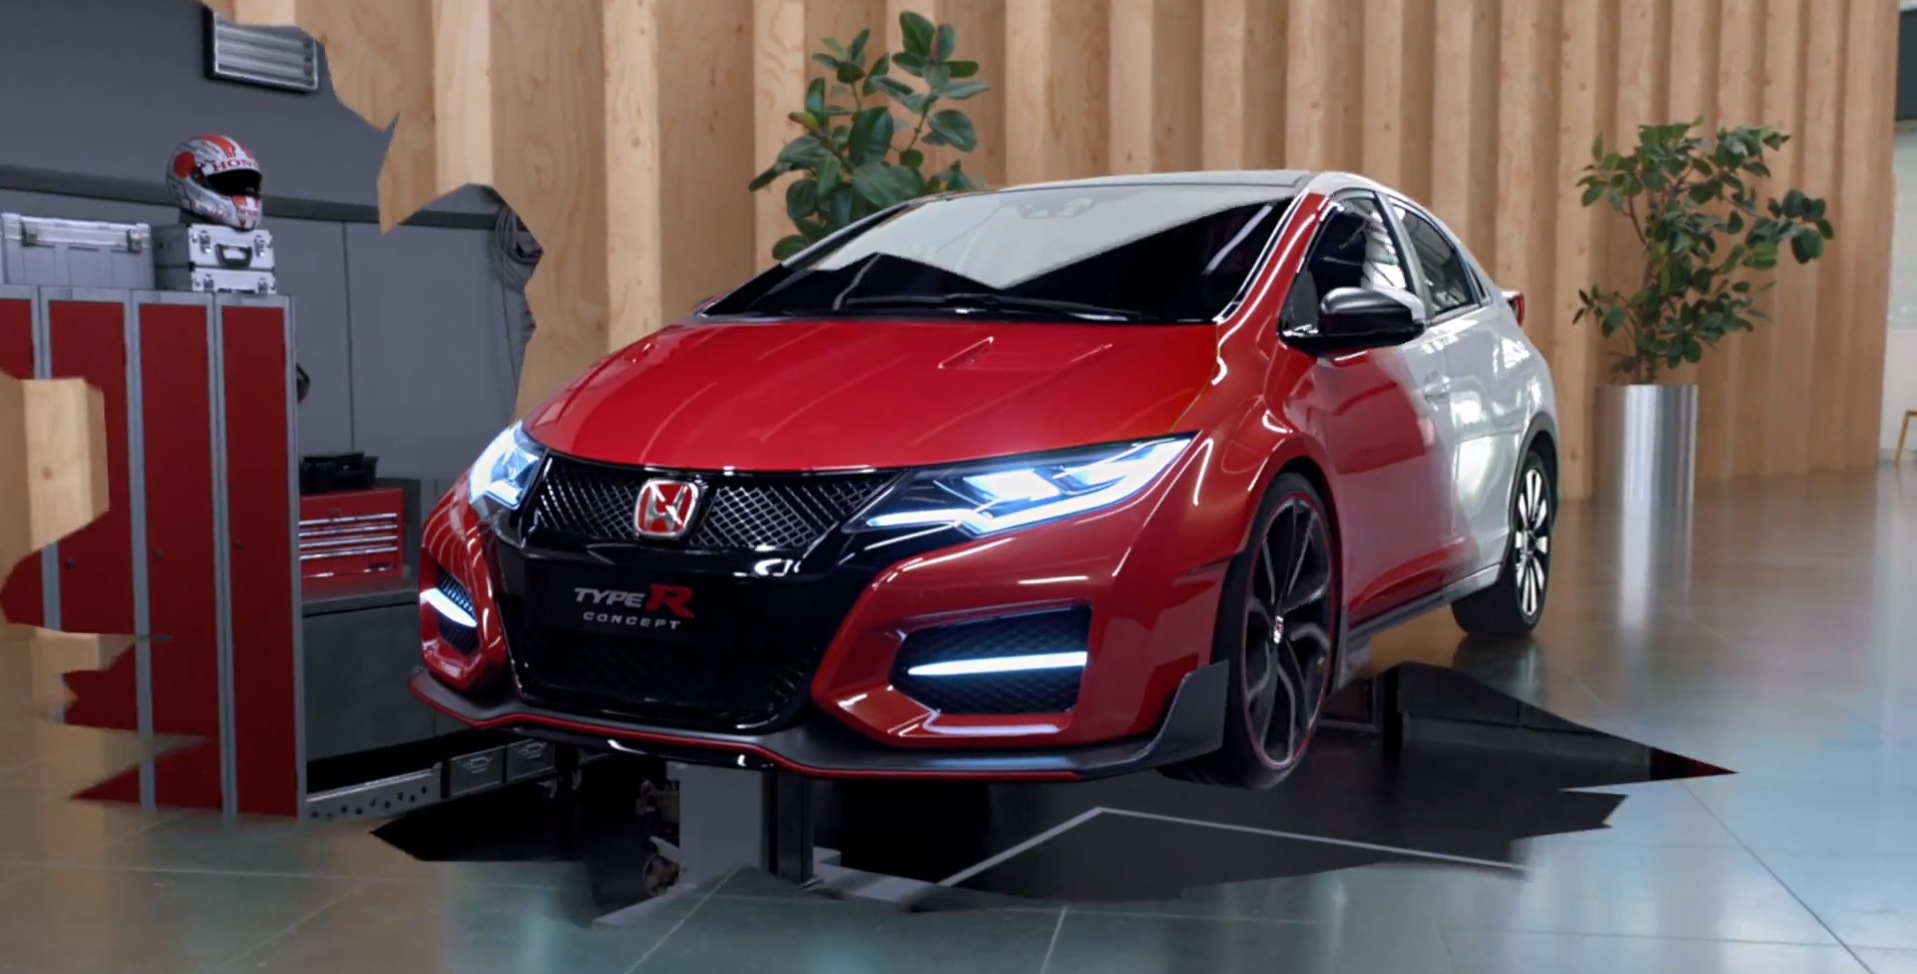 “بالفيديو” ظهور الجانب الاخر من سيارة هوندا سيفيك 2015 تايب R الجديدة Honda Civic